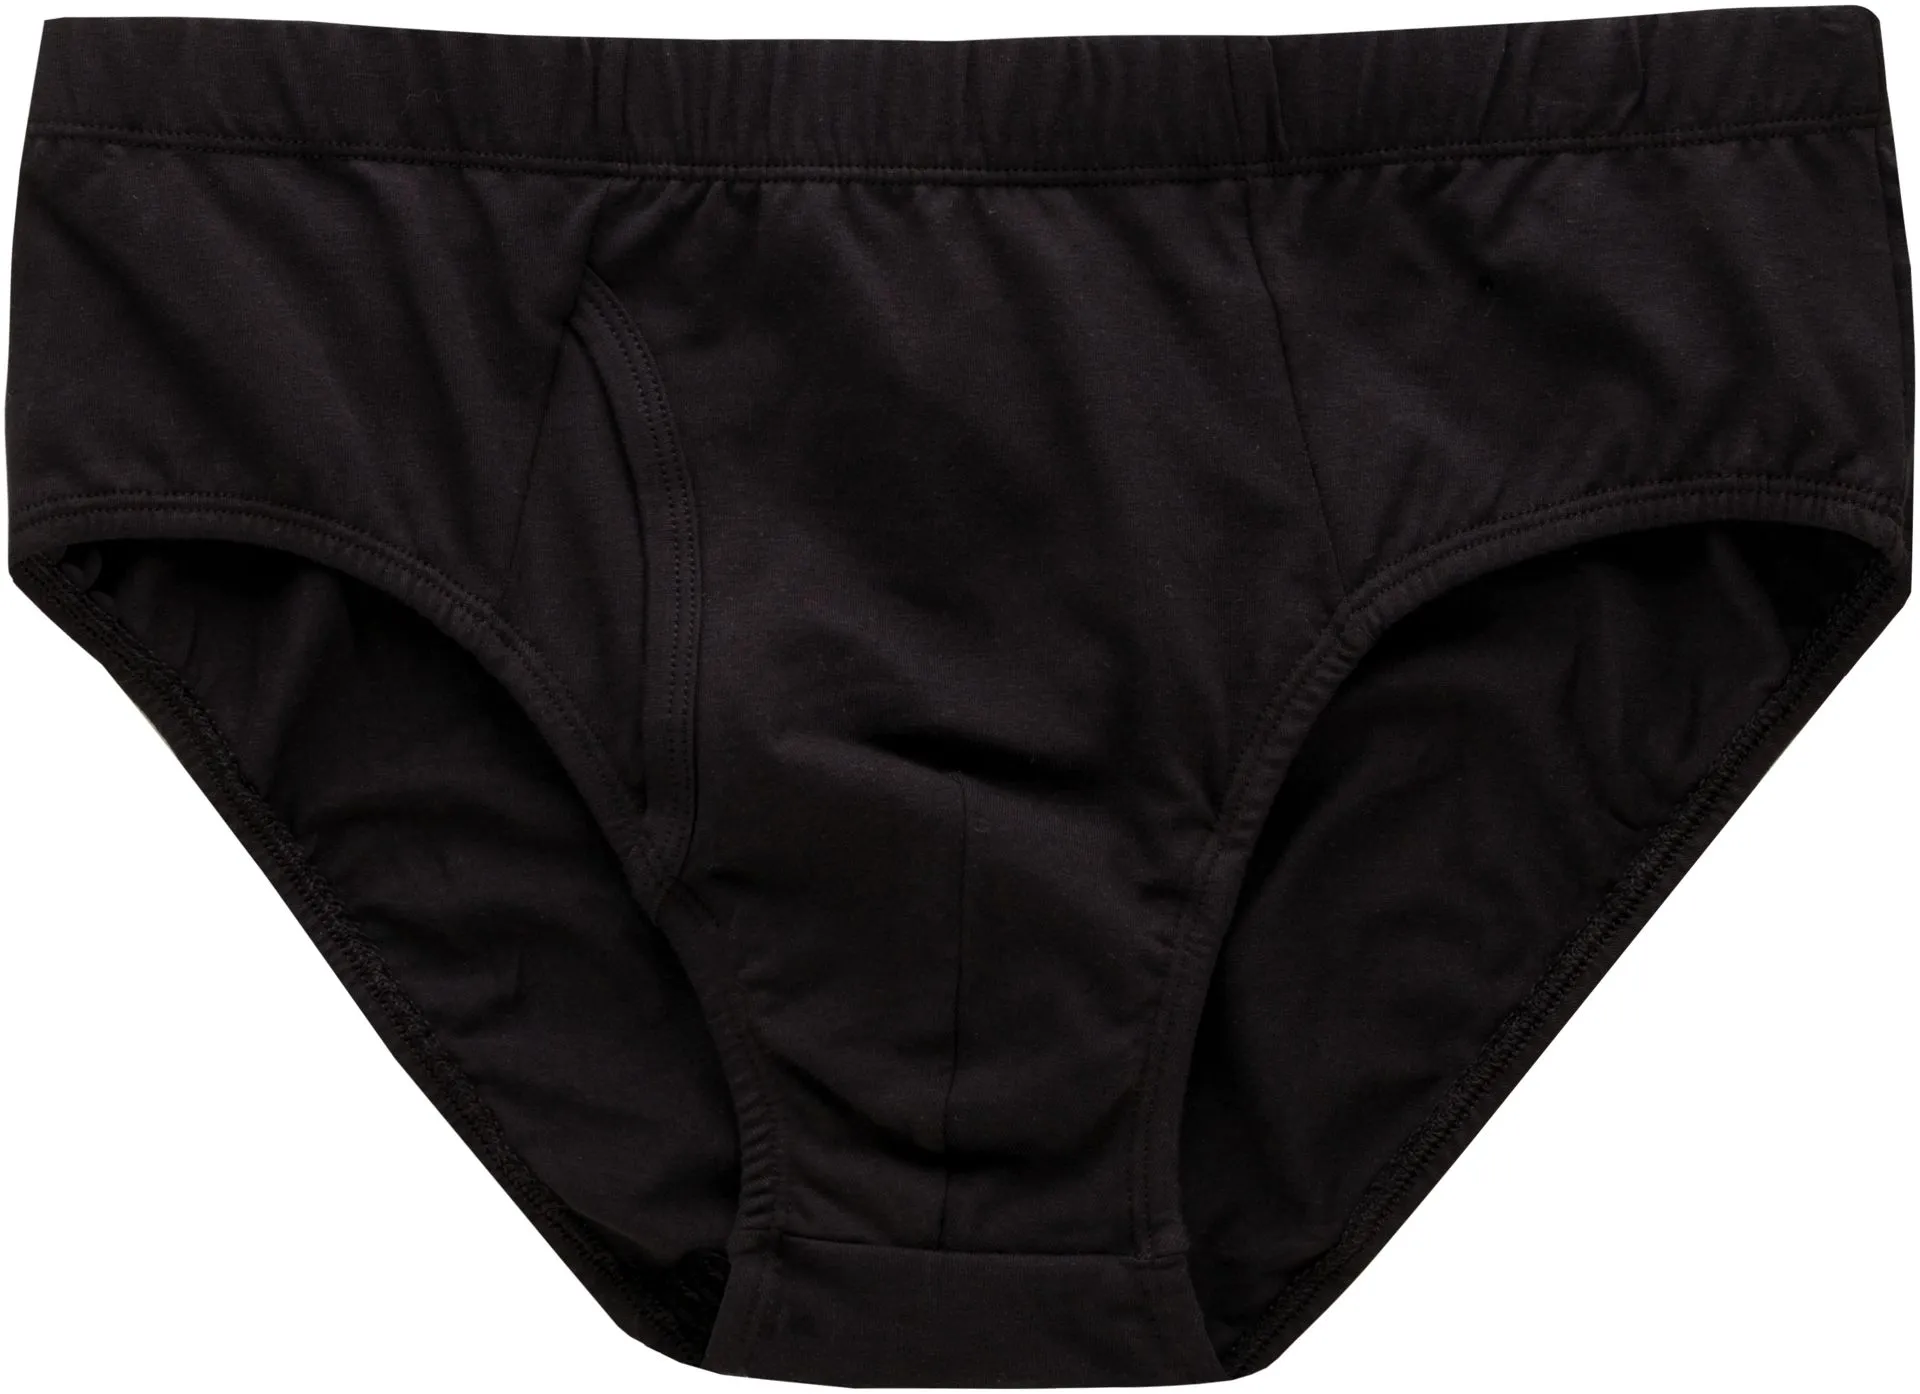 House miesten alushousut 190H092013 2-pack - Black/black